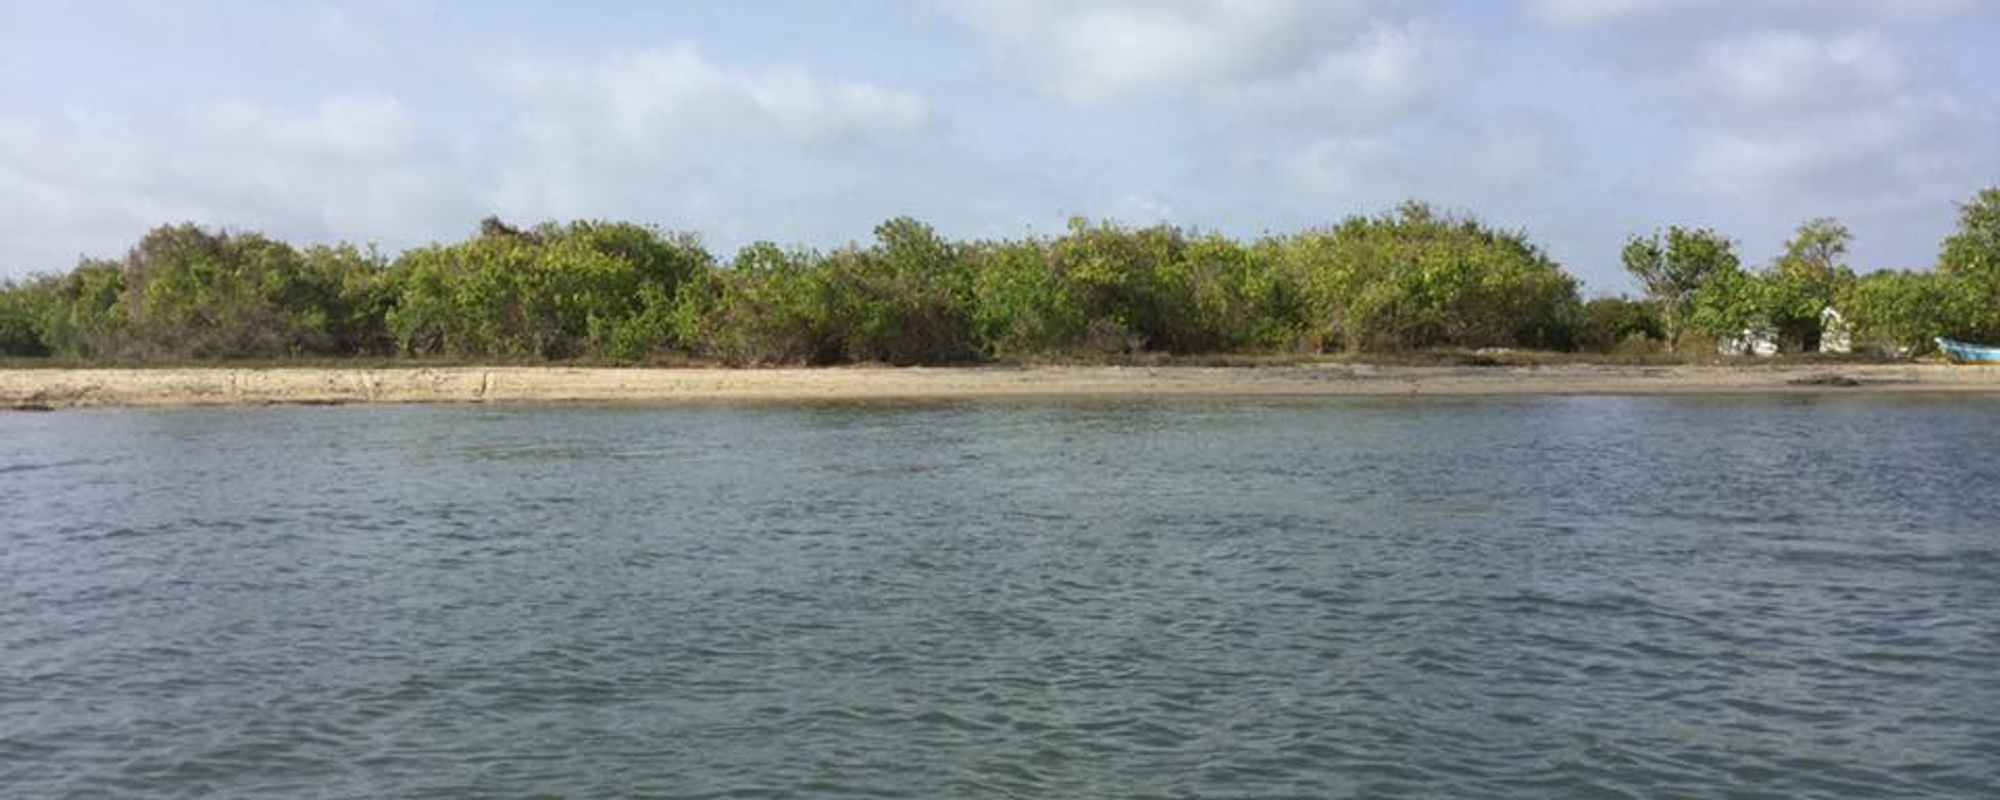 Gange wadiya that boasts a beautiful mangrove environment...